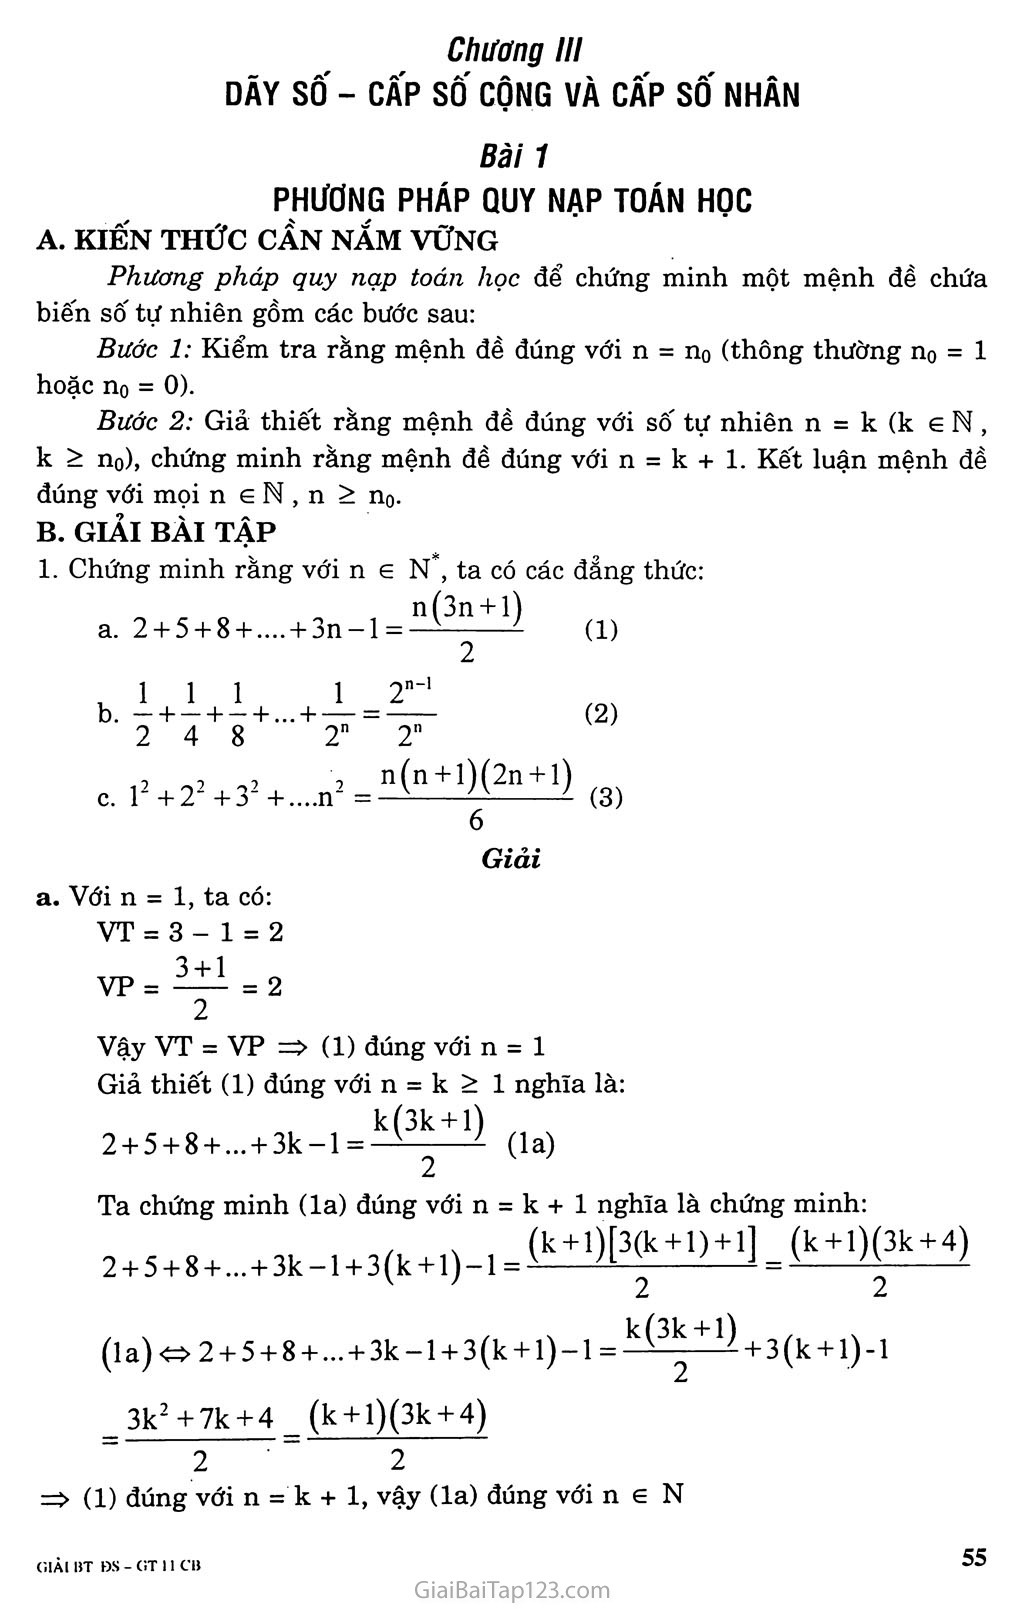 Bài 1. Phương pháp quy nạp toán học trang 1